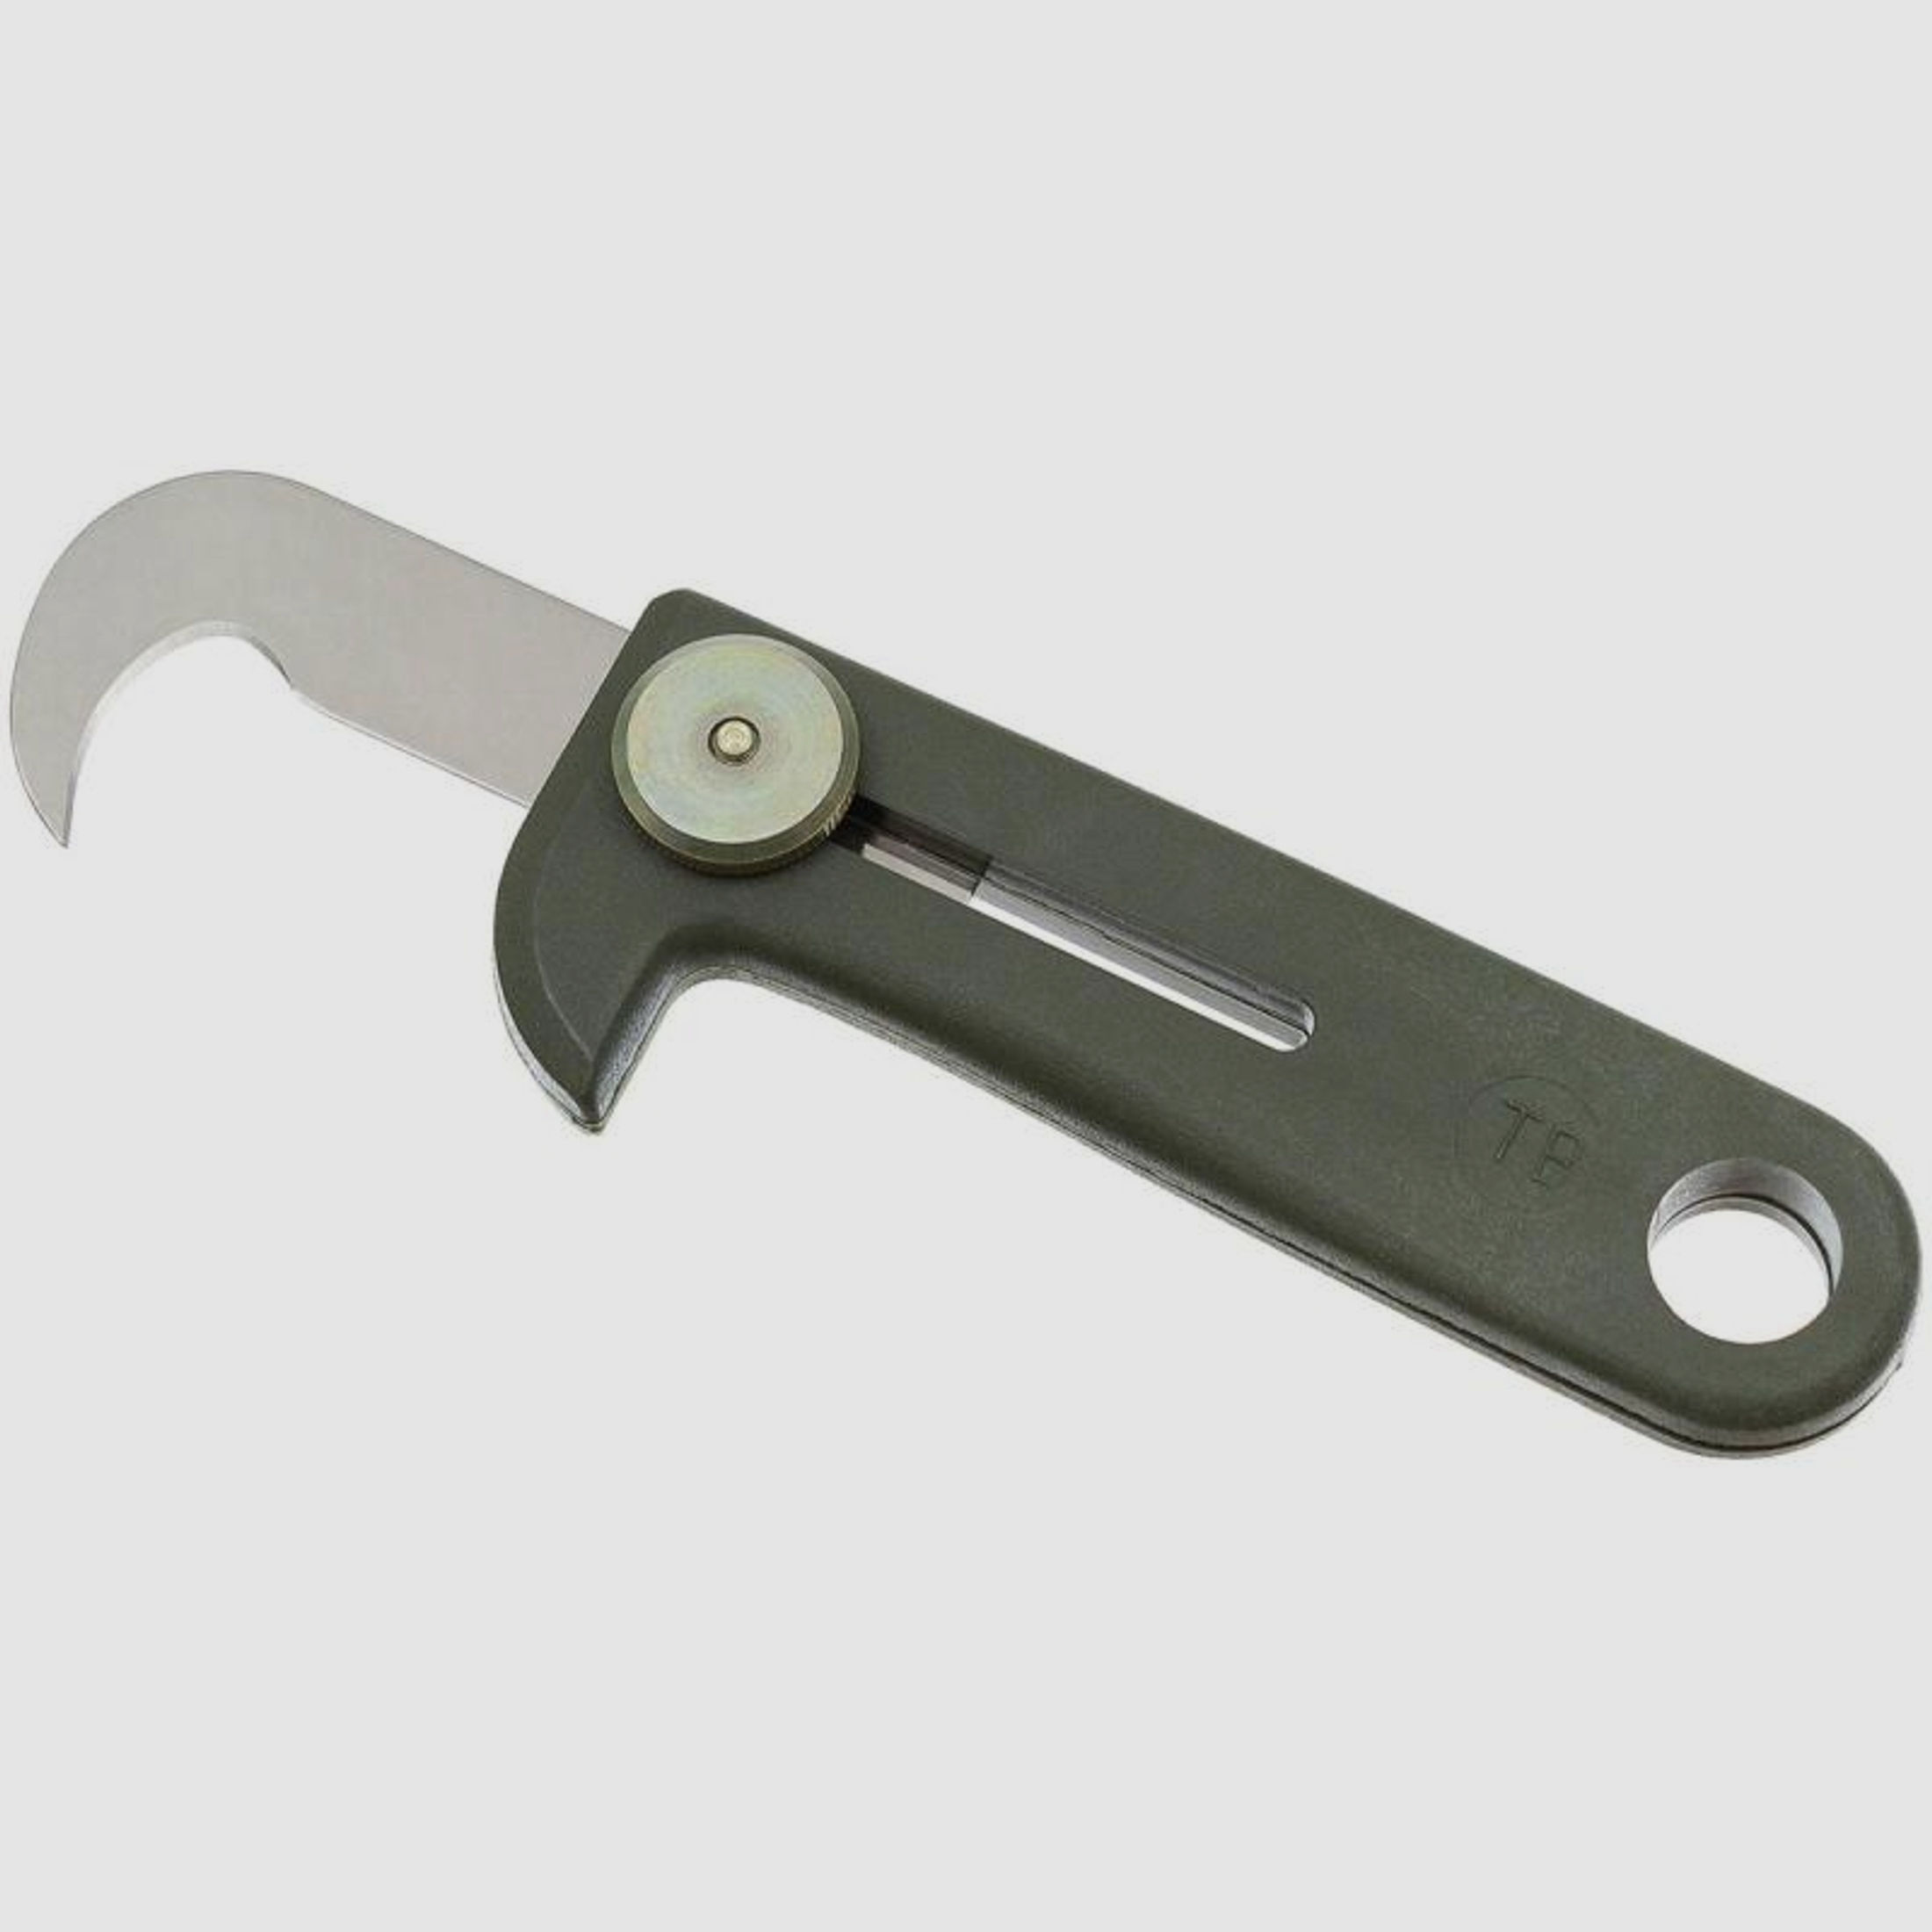 Cutter Messer "Olfa" (Französische Armee) - oliv